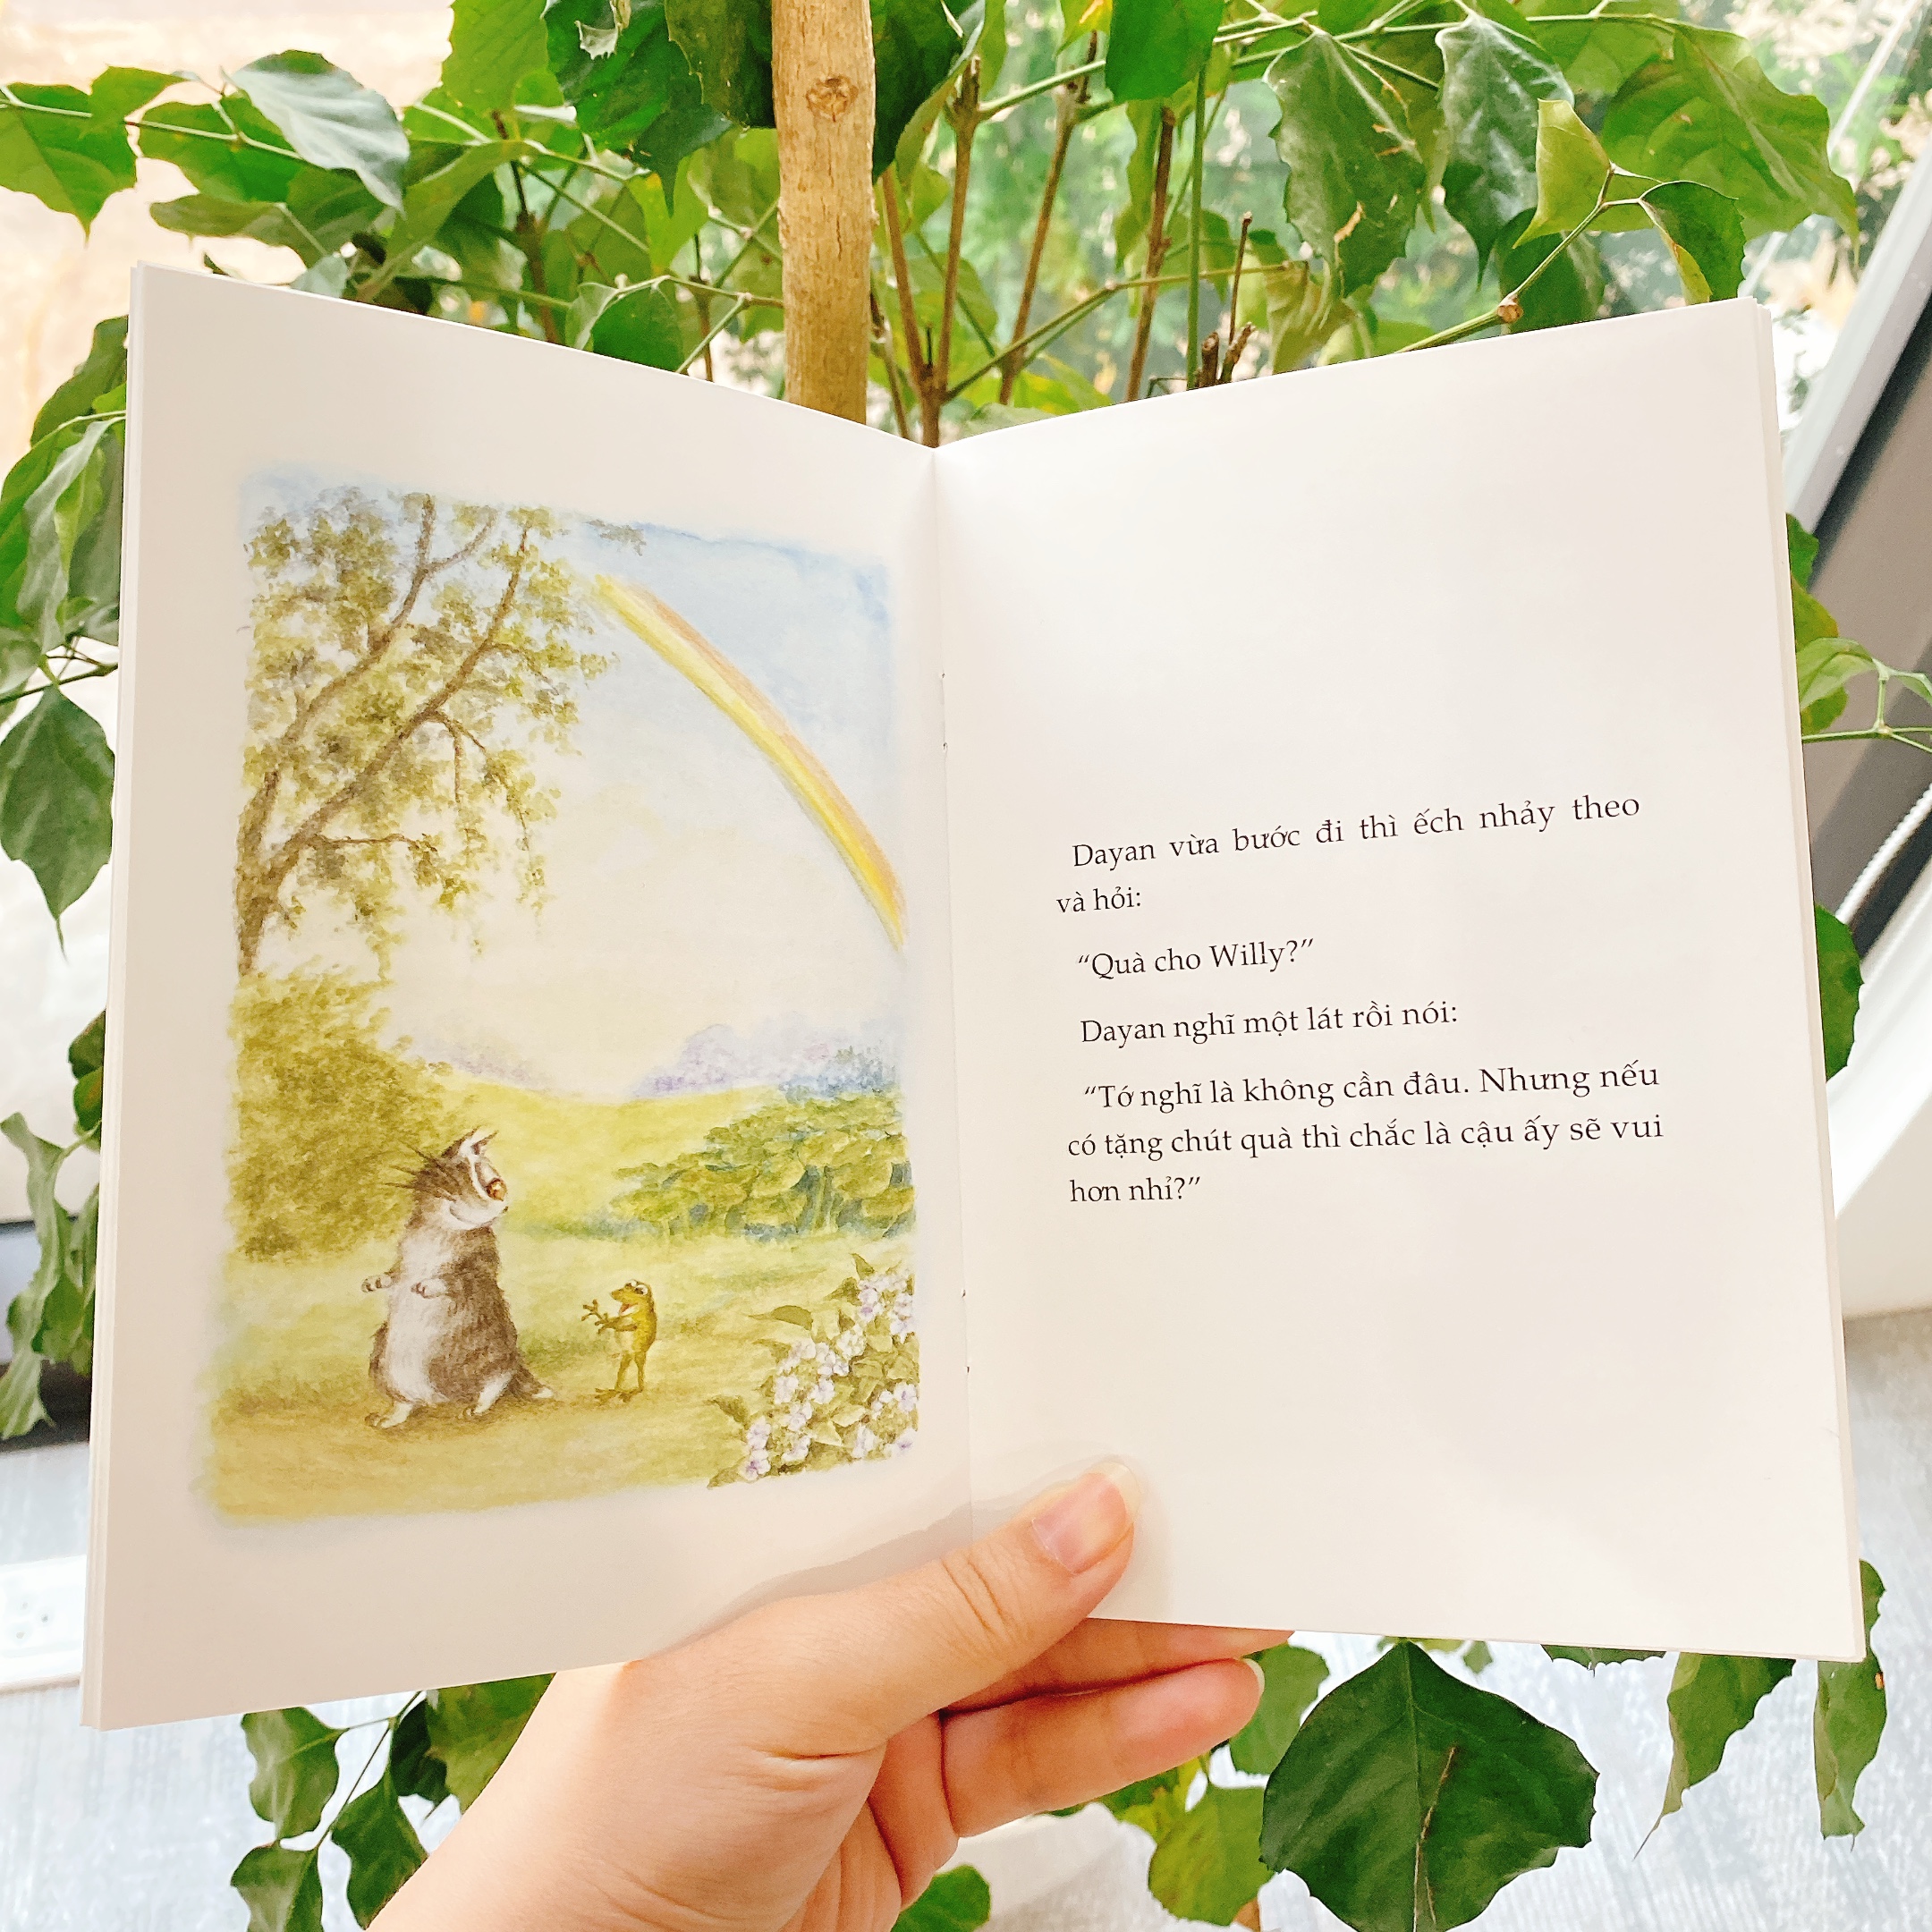 BỮA TIỆC NGÀY THỨ NĂM MƯA - Loạt truyện Mèo Dayan - Sách cho bé từ 4 tuổi